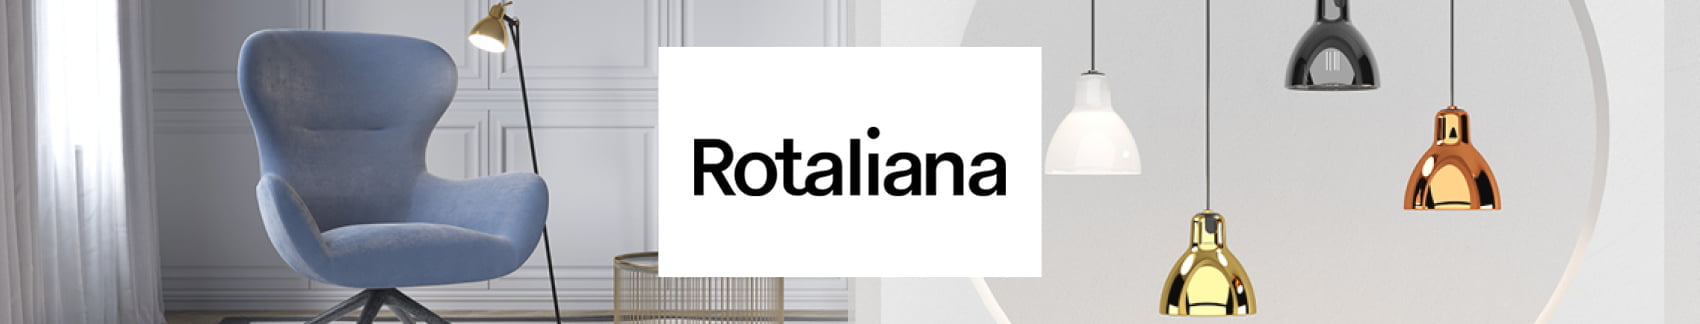 Rotaliana Banner Vild Med Lys